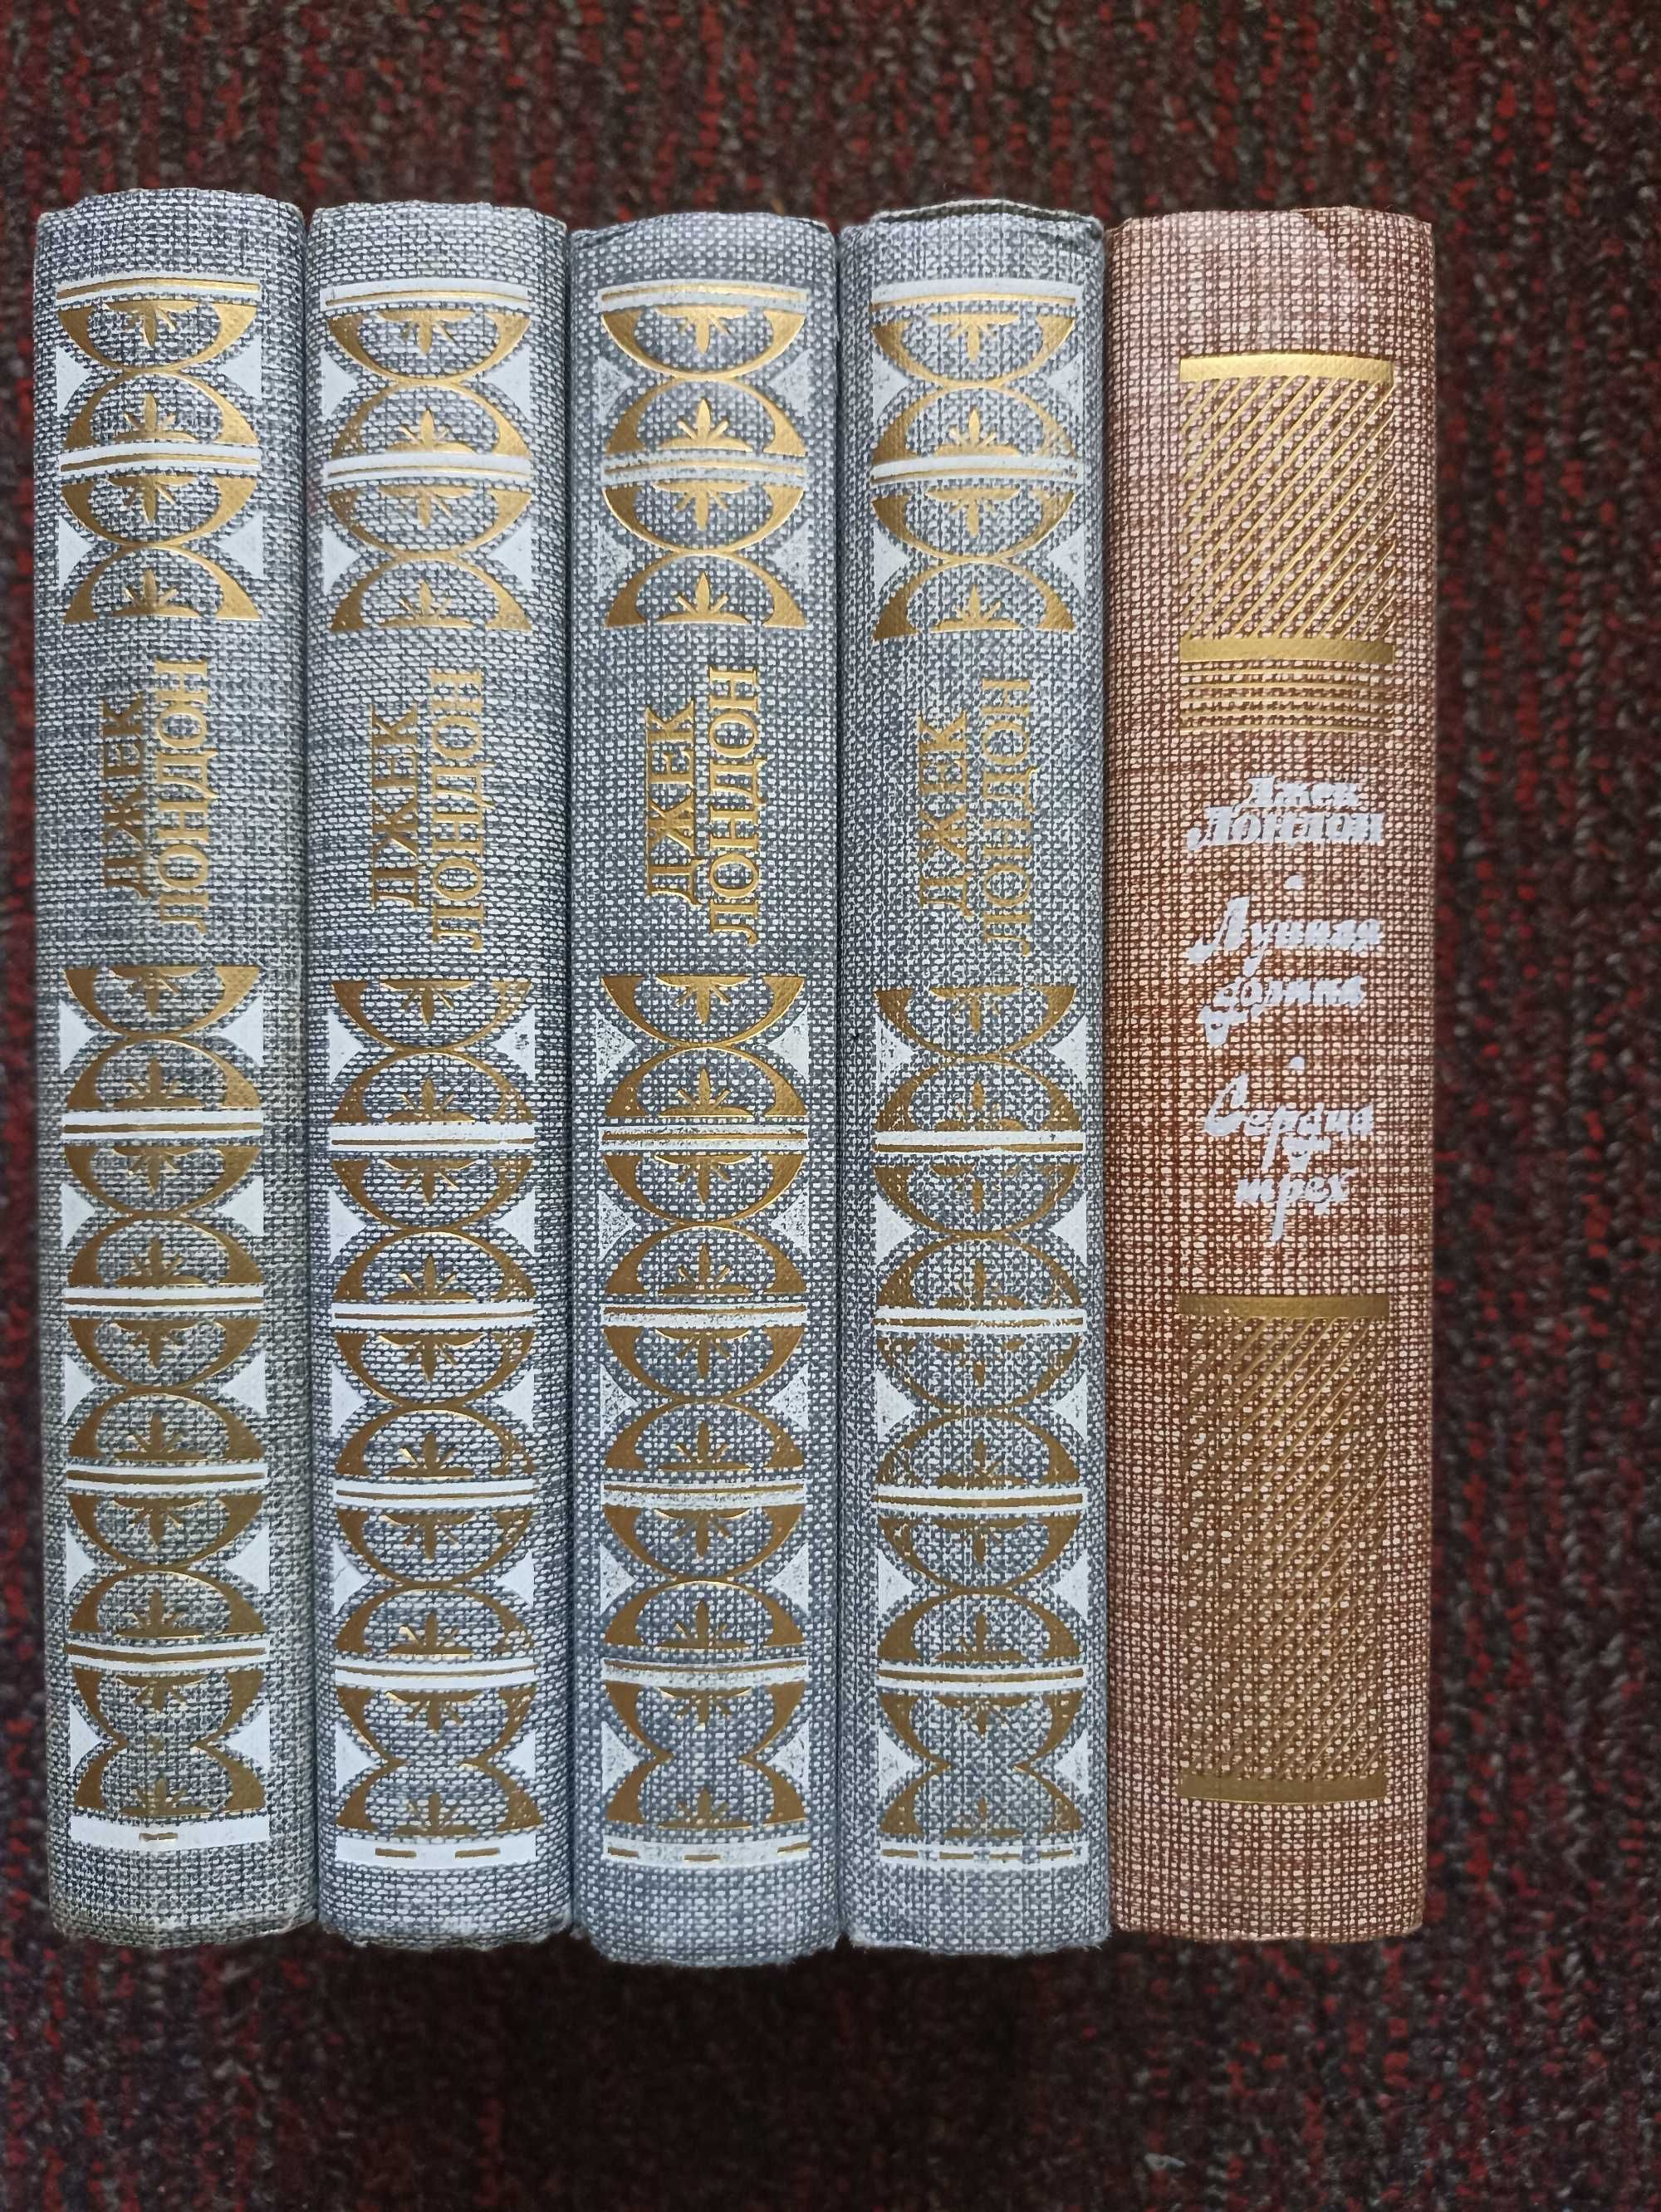 Джек Лондон - Собрание сочинений в 4 томах + 1 дополнительный том.